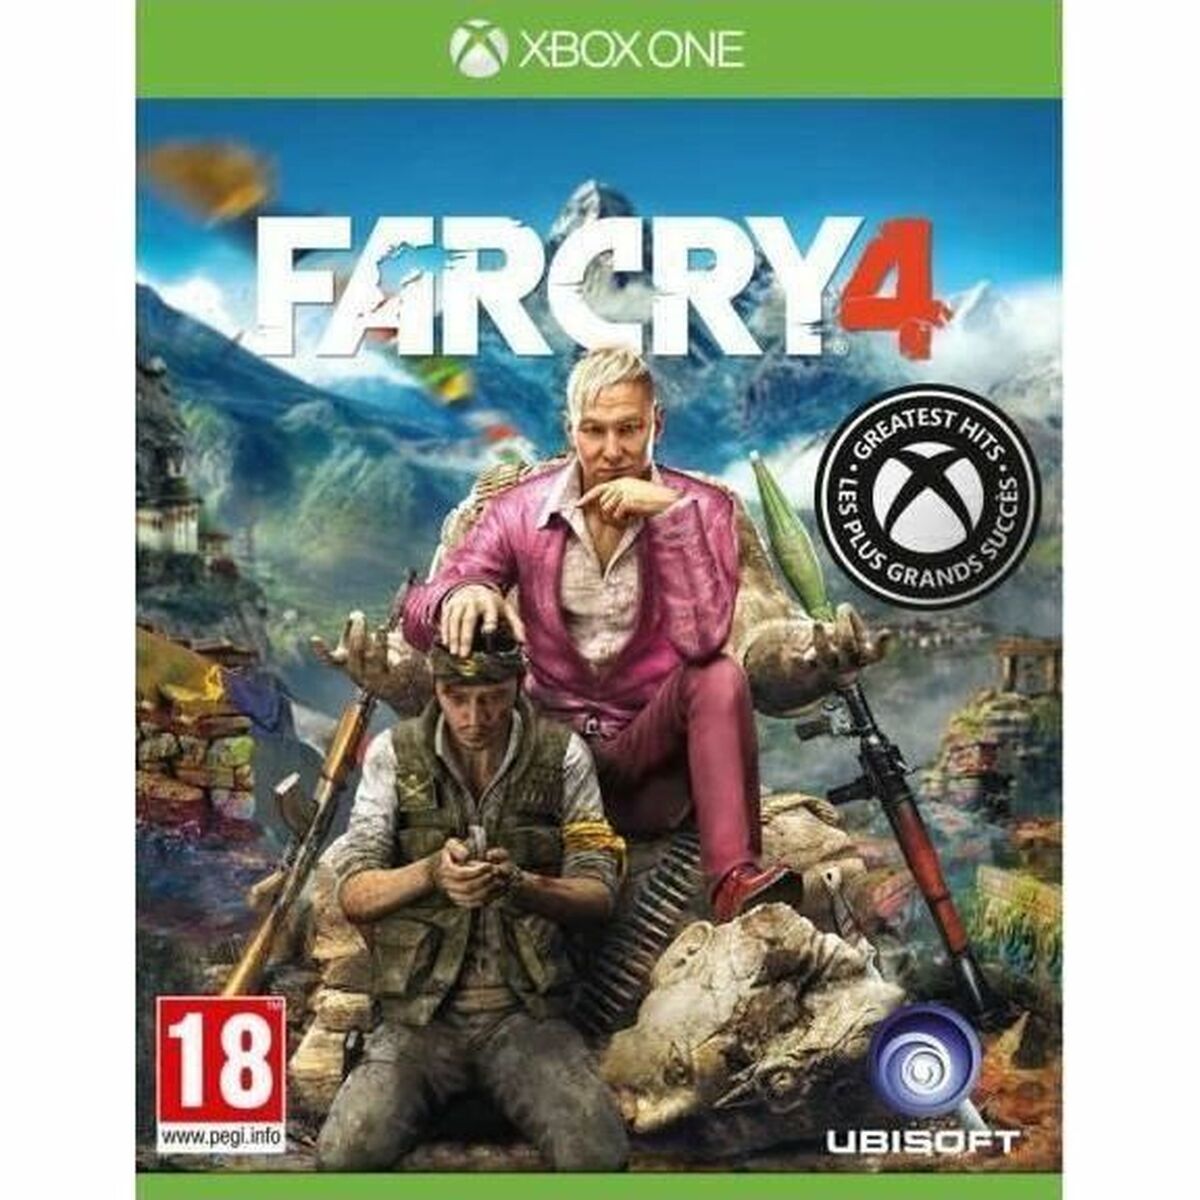 Jeu vidéo Xbox One Ubisoft Far Cry 4 Greatest Hits (FR)